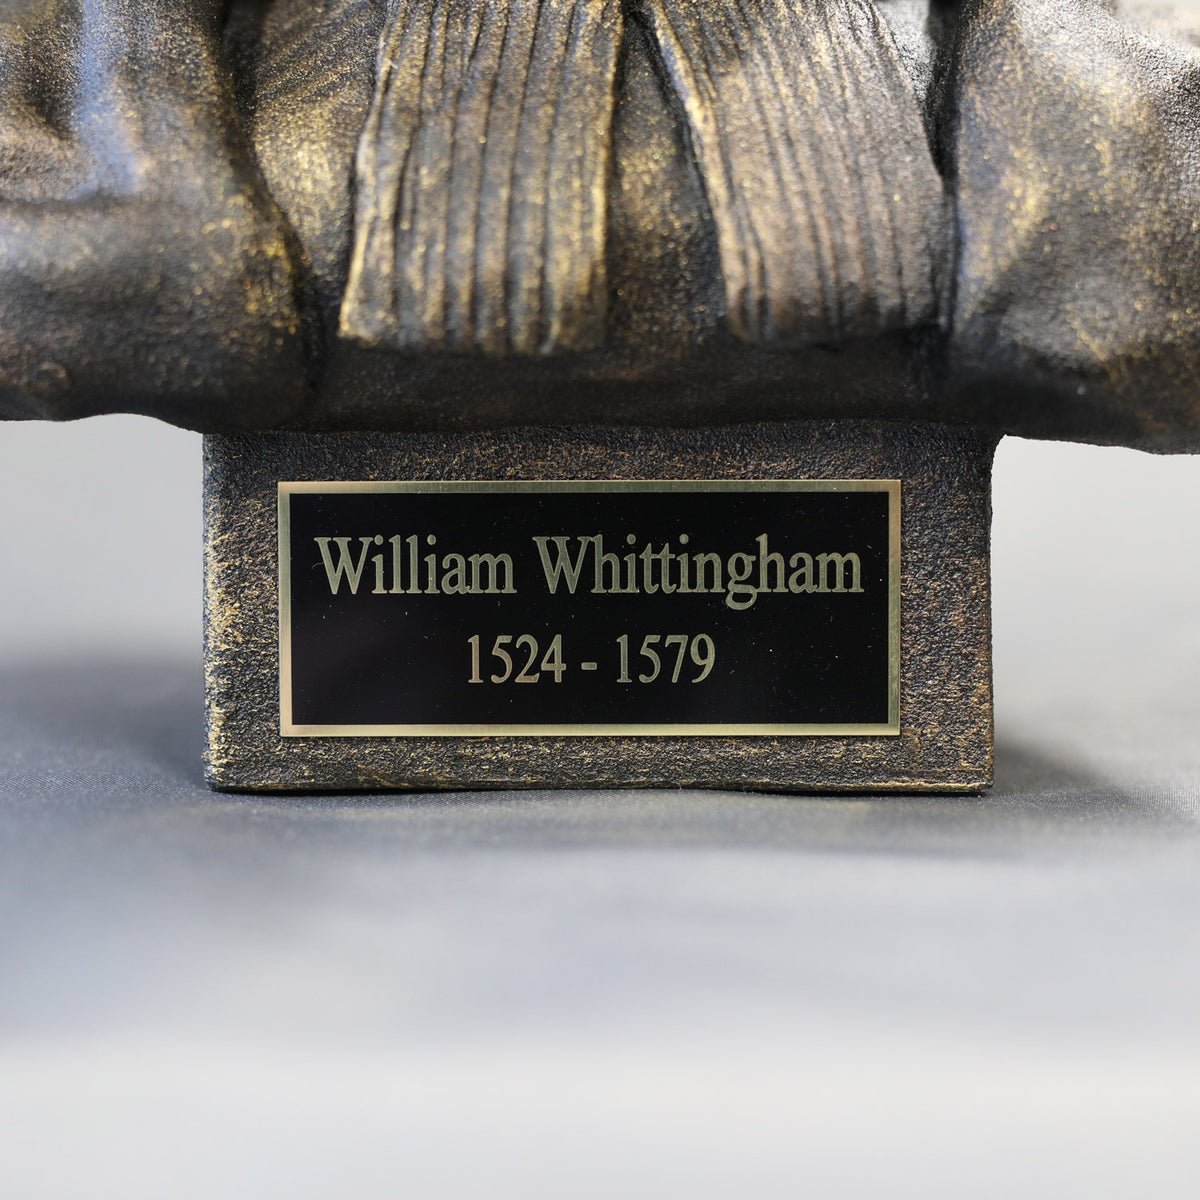 William Whittingham - Sculpture